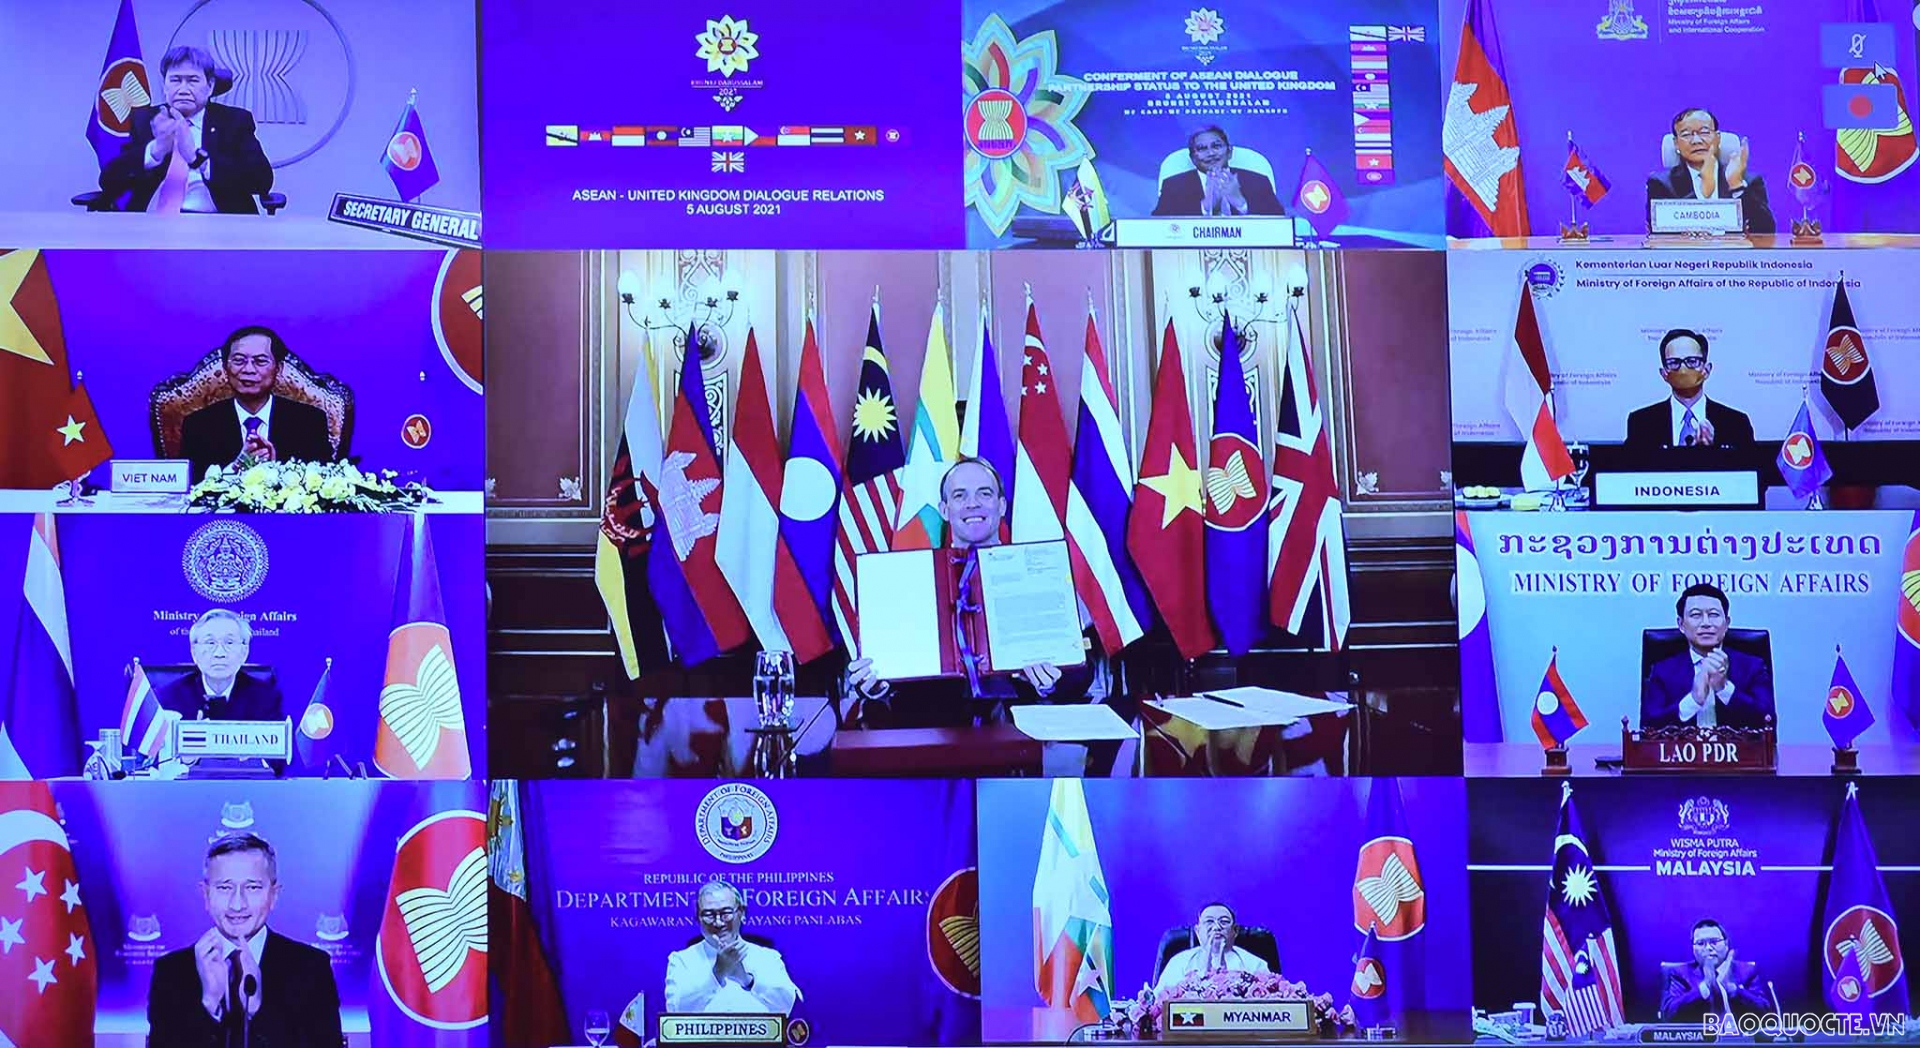 ASEAN grants UK ‘dialogue partner’ status